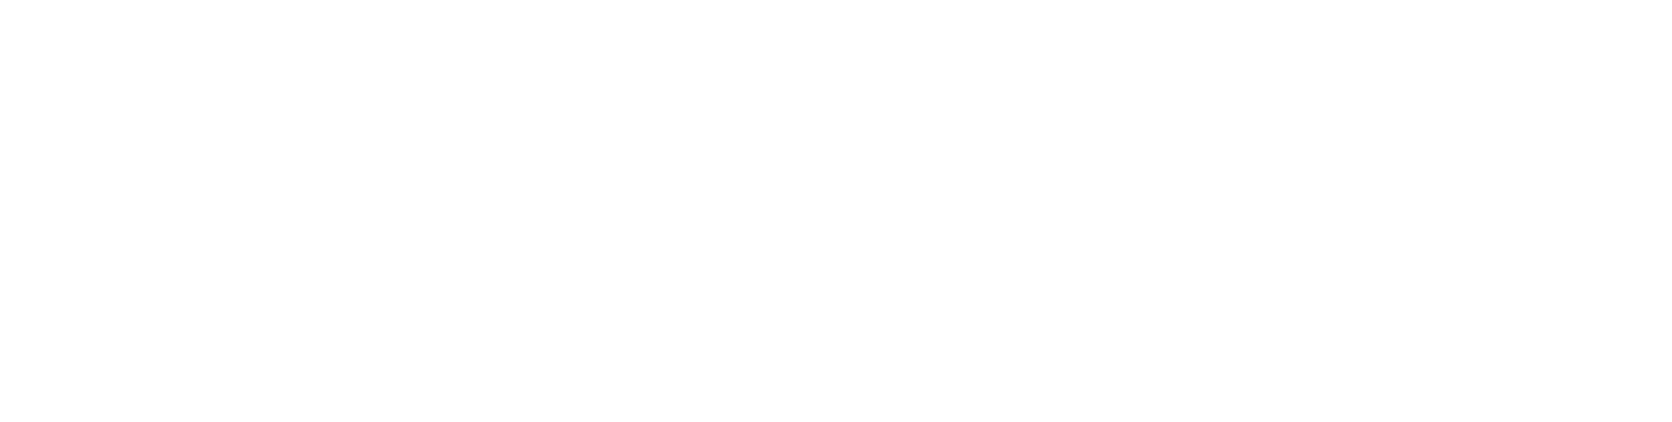 Xaxis Logo.